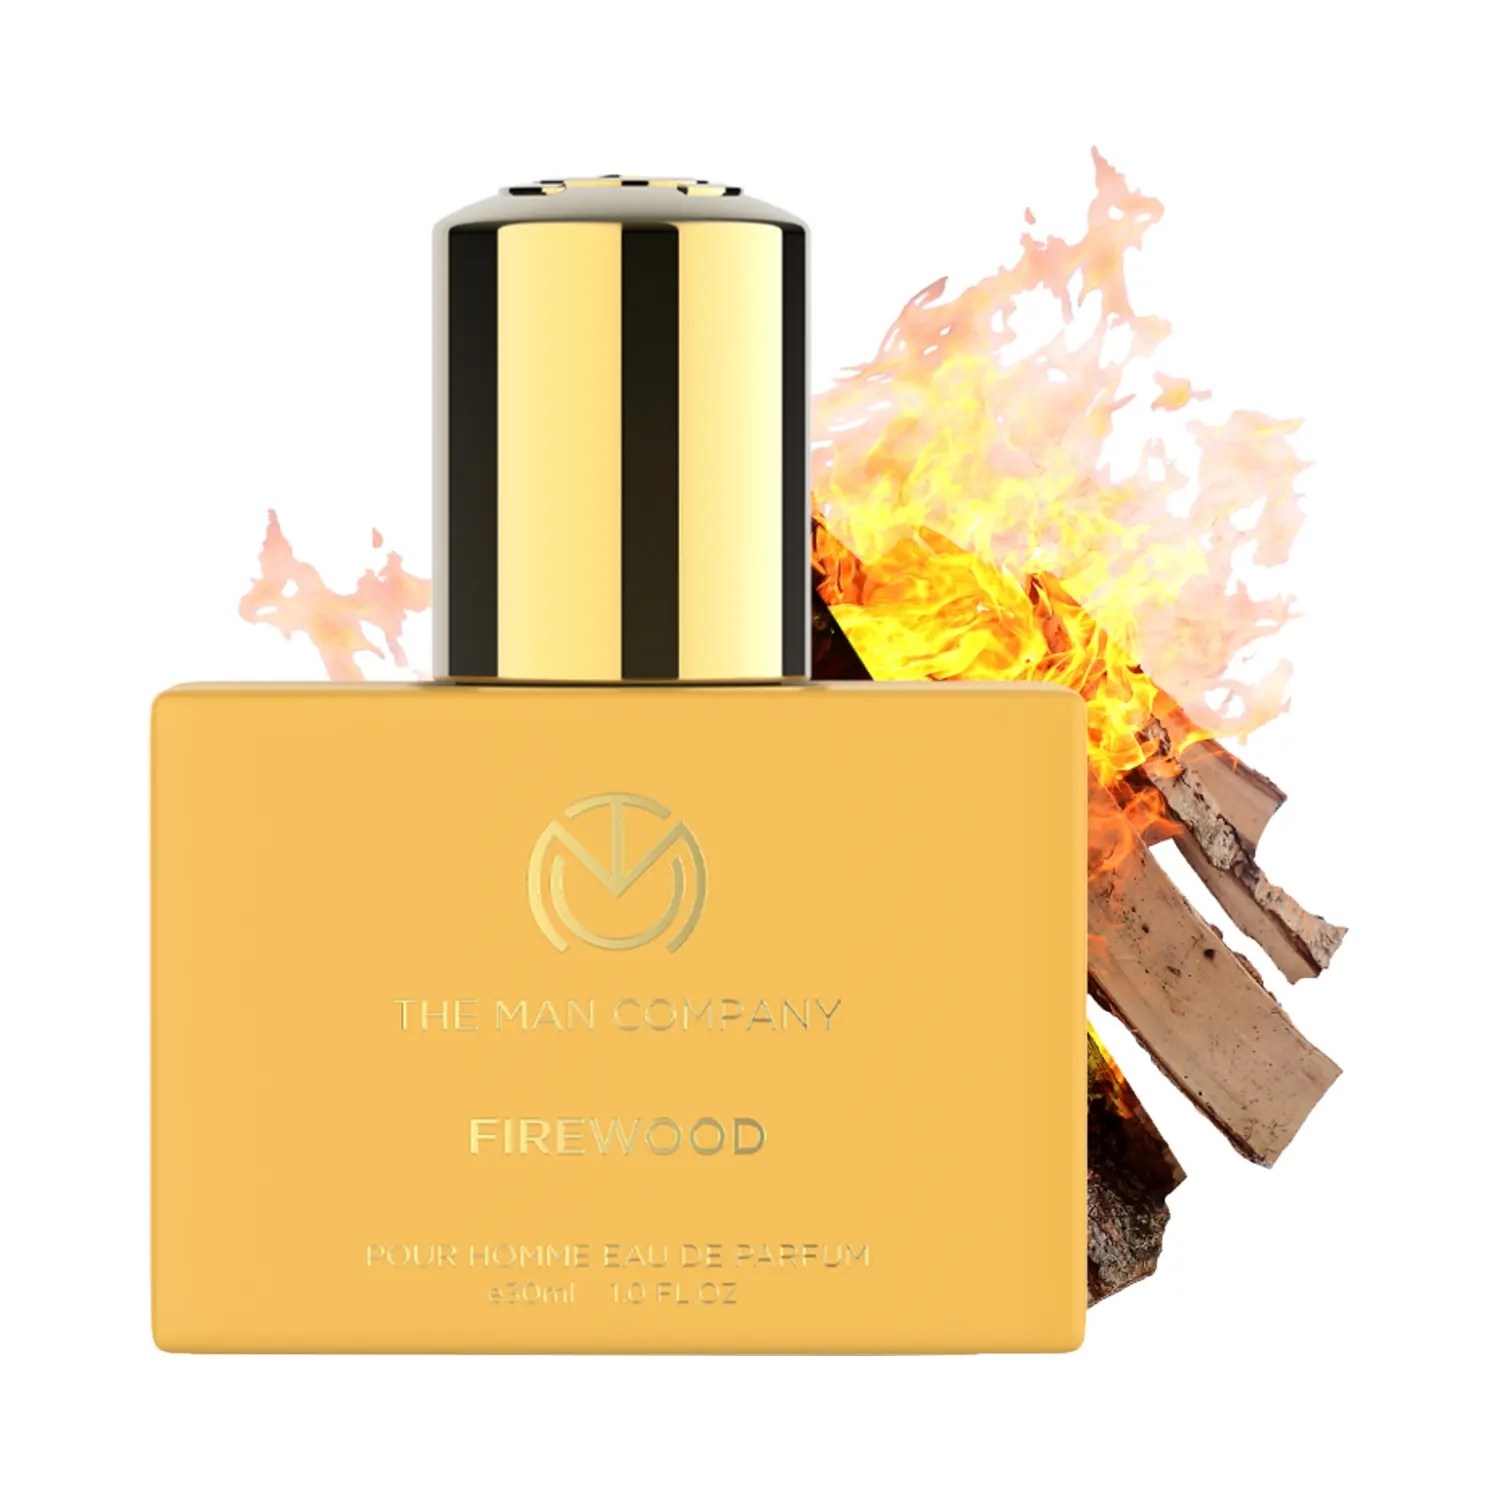 The Man Company | The Man Company Firewood Eau De Parfum (30ml)